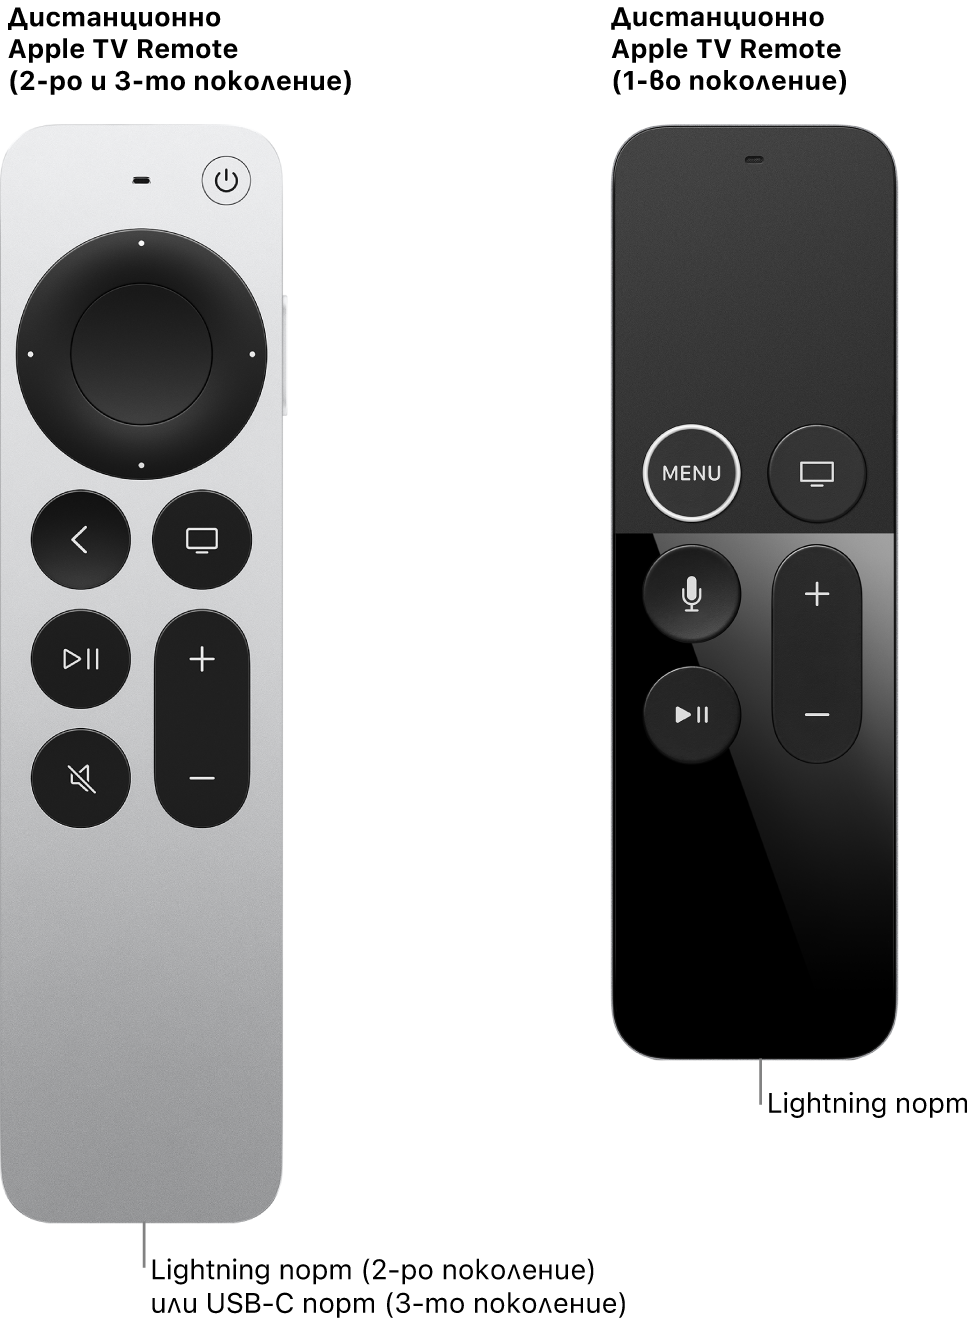 Изображение на дистанционно Apple TV Remote (2-ро поколение) и дистанционно Apple TV Remote (1-во поколение) с порта Lightning.